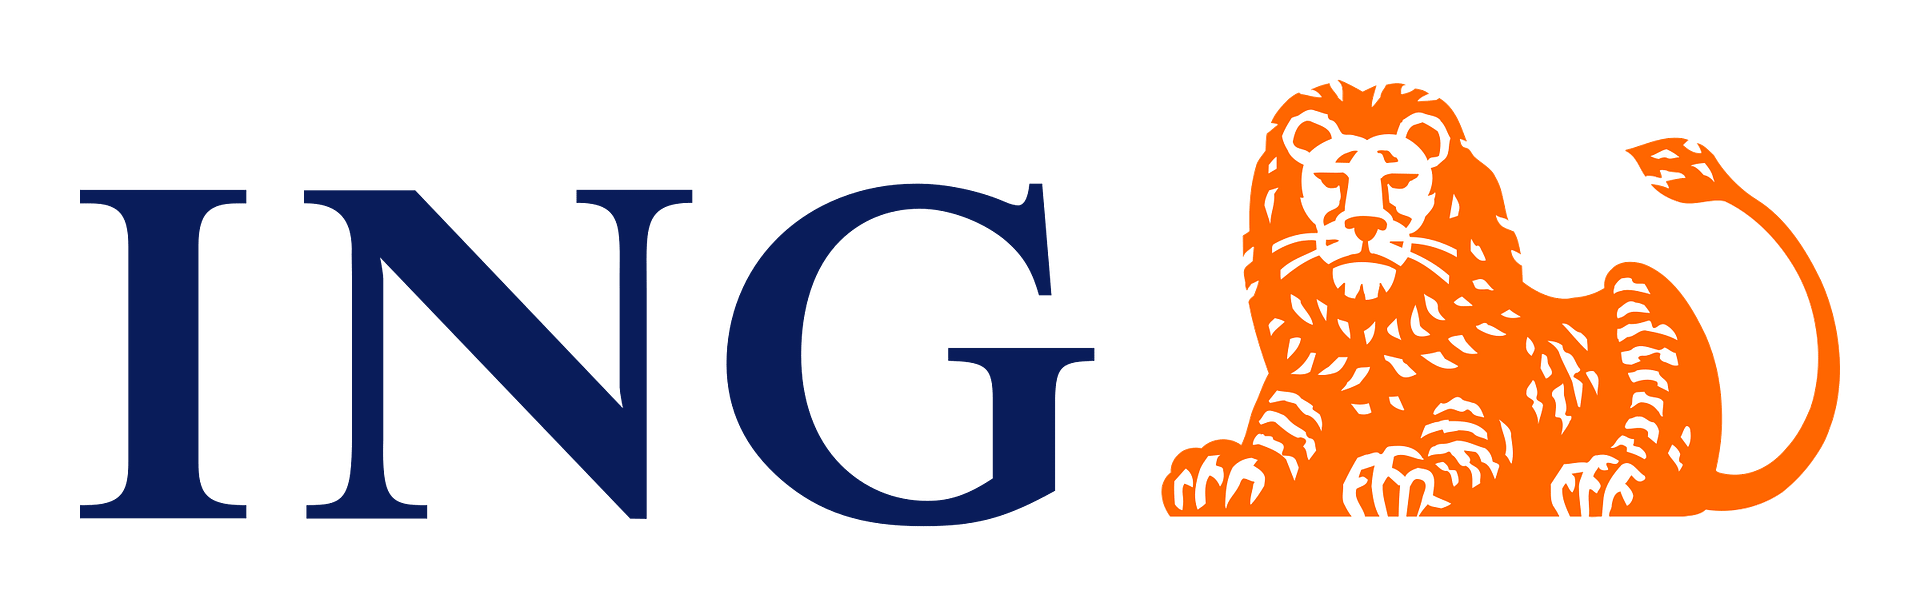 ING-logo-png-transparent